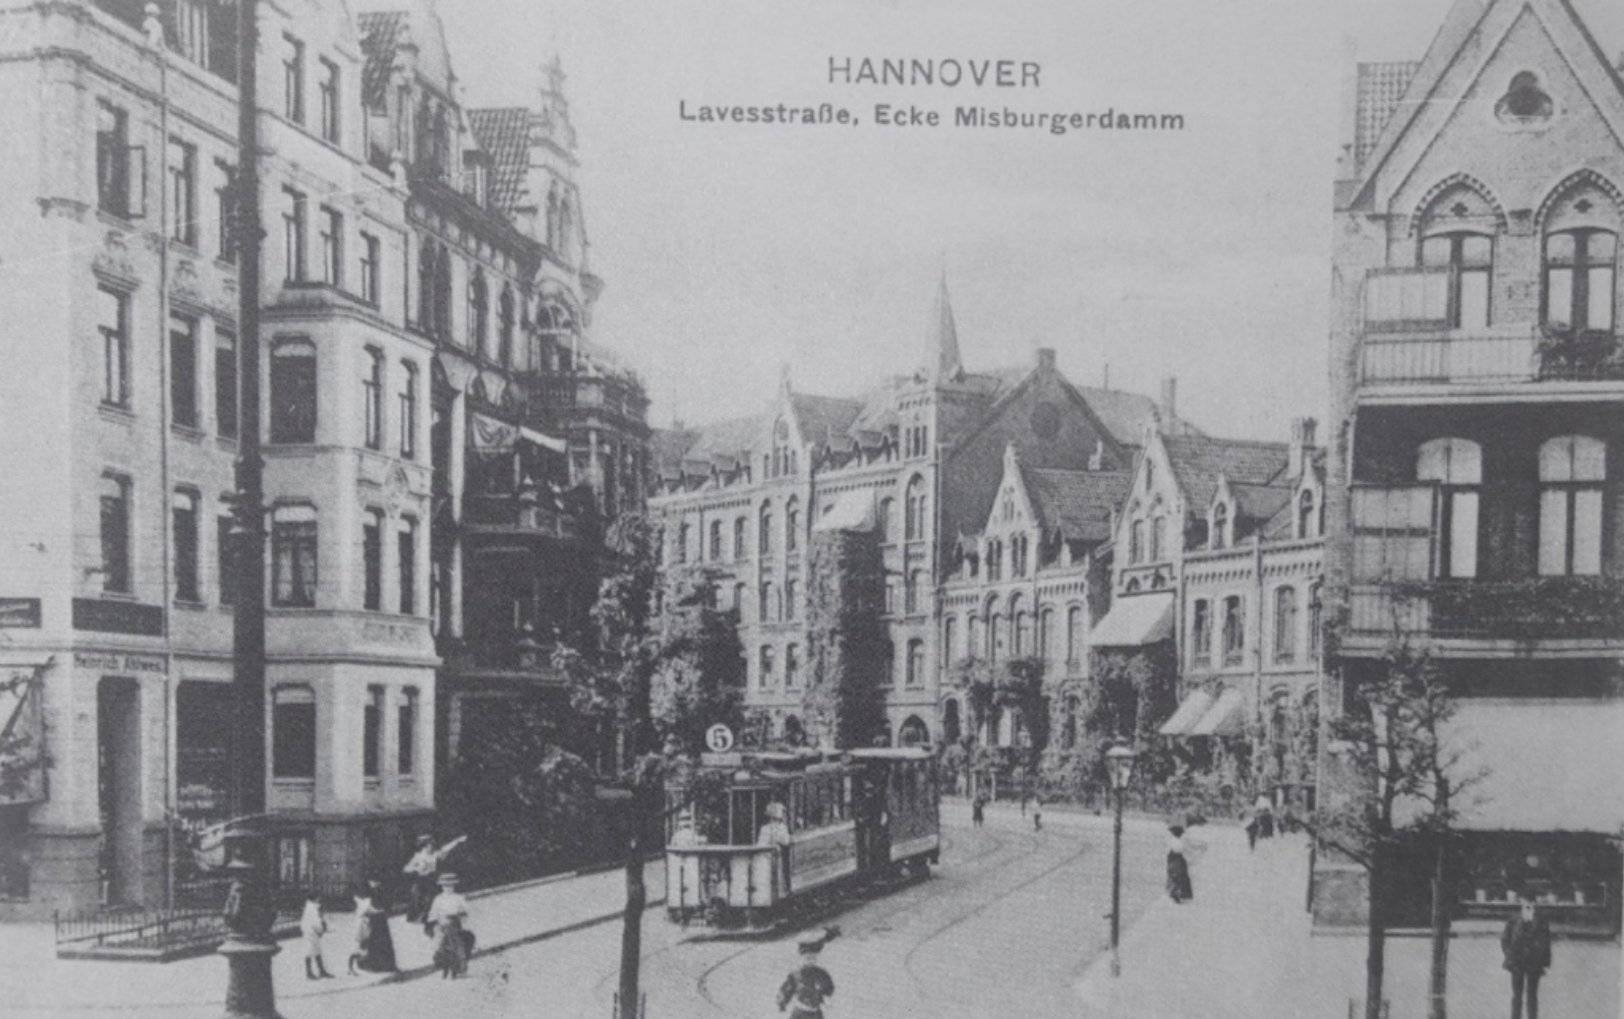 Lavesstraße